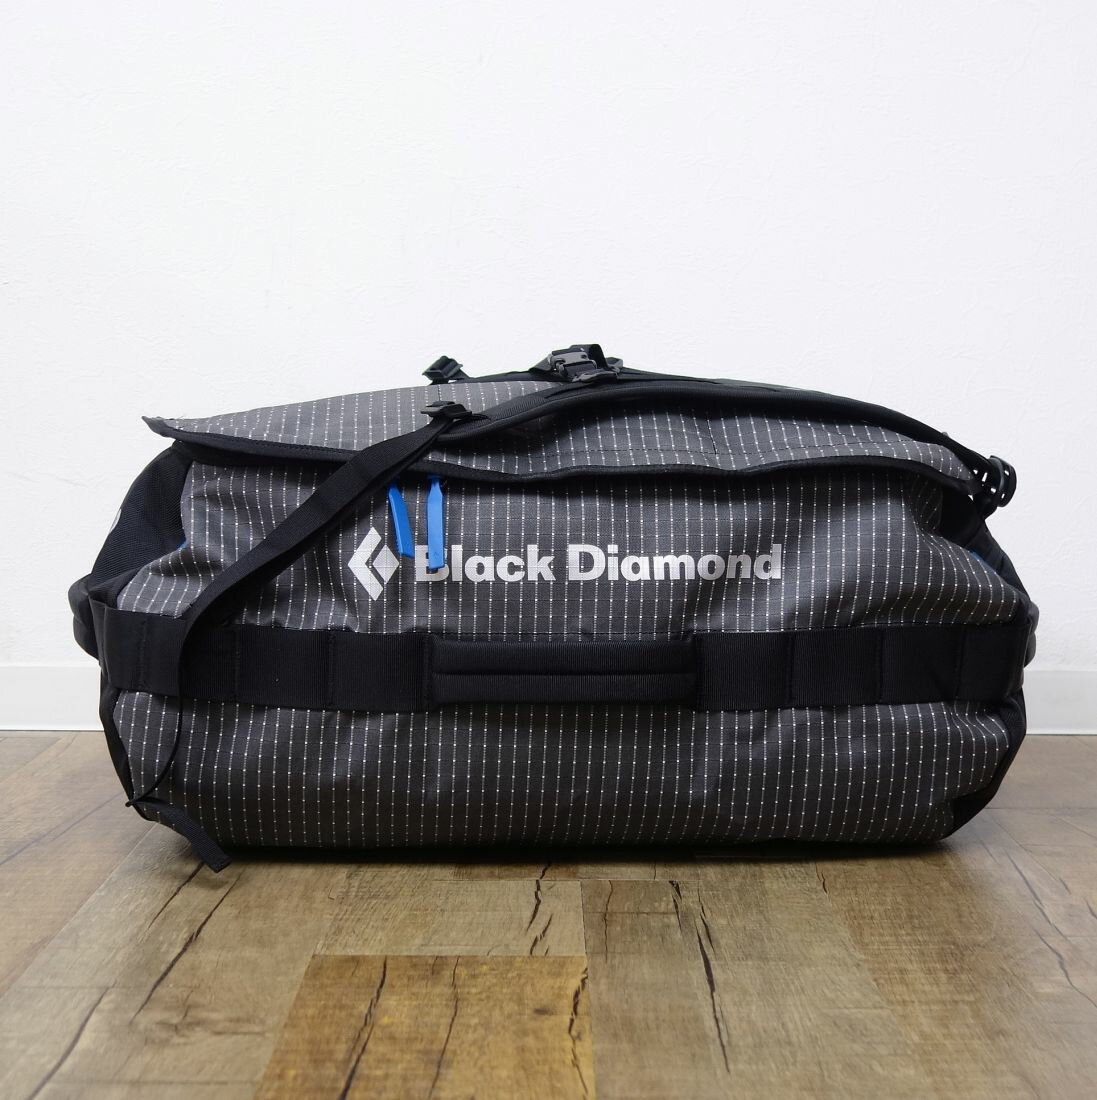 ブラックダイヤモンド Black Diamond STONEHAULER 60 ストーンホーラー 60L ダッフル バッグ ボストンバッグ 登山 アウトドア【中古】